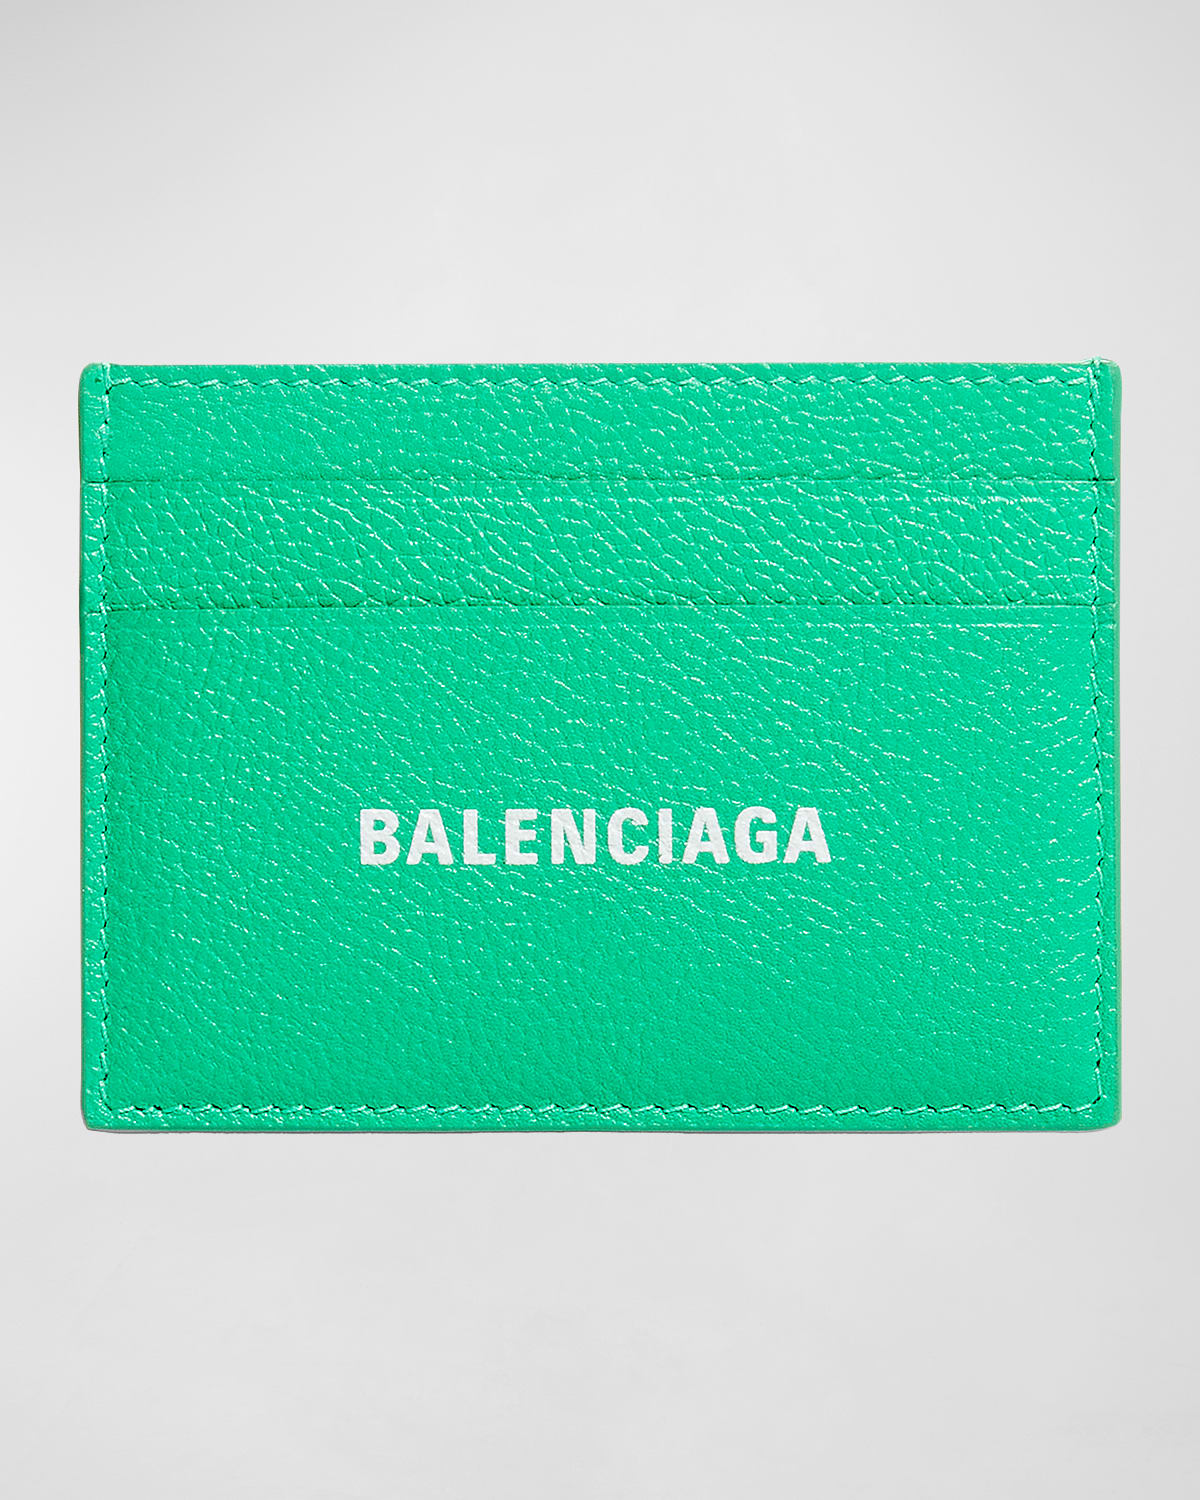 Balenciaga Men's Calfskin Cash Card Holder In Green